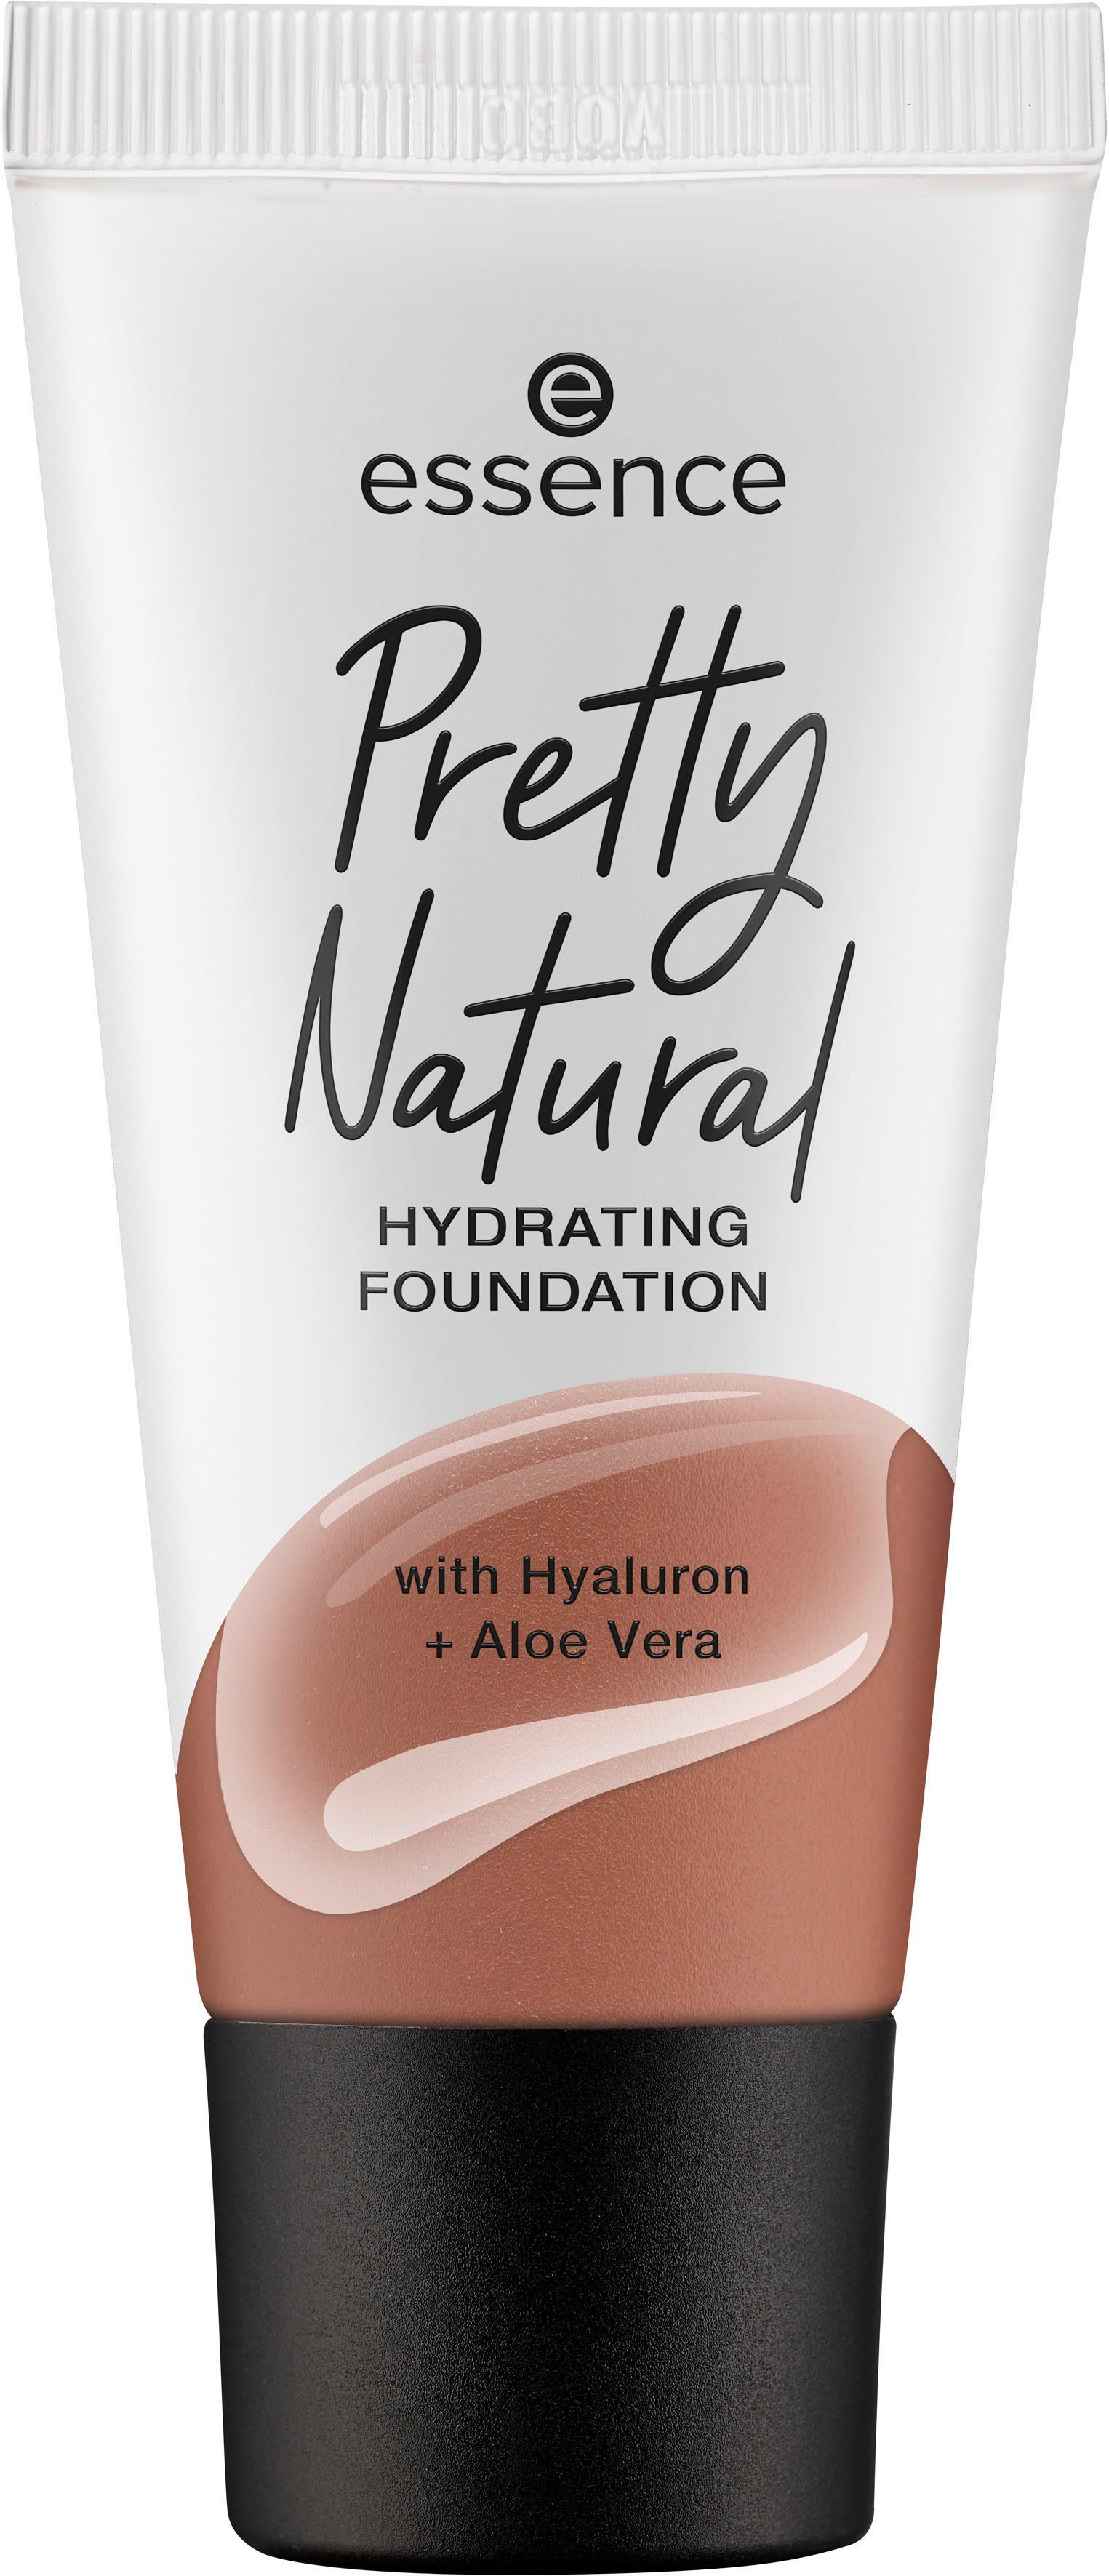 Sienna Pretty 3-tlg. Essence Natural Foundation Warm HYDRATING,